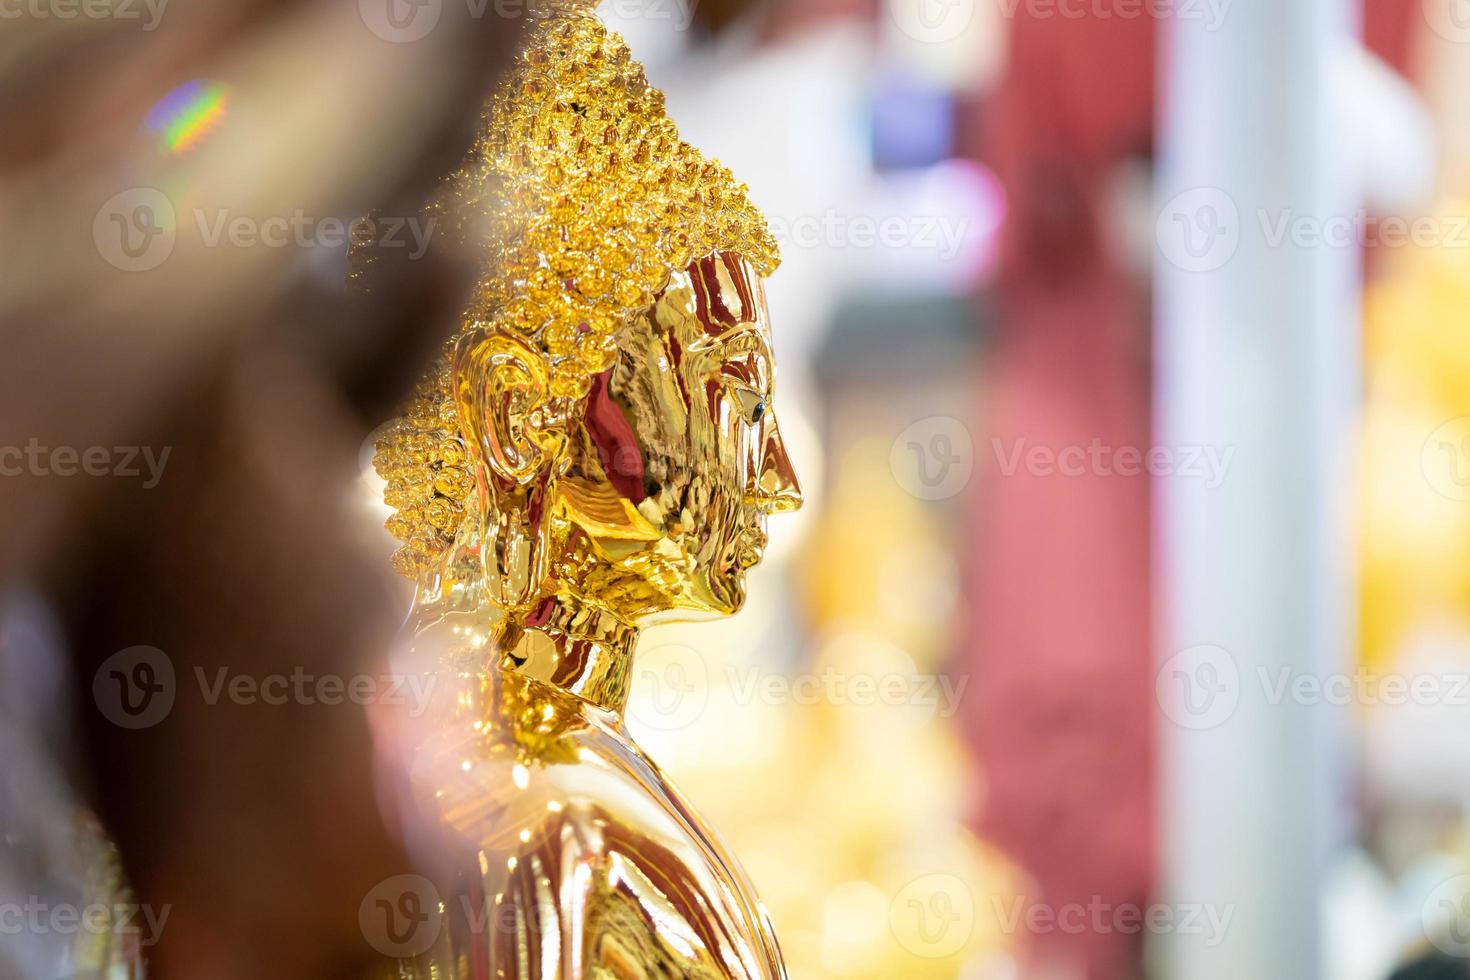 feche o brilho antigo da ásia e a estátua de buda brilhante dentro do templo da tailândia. foto